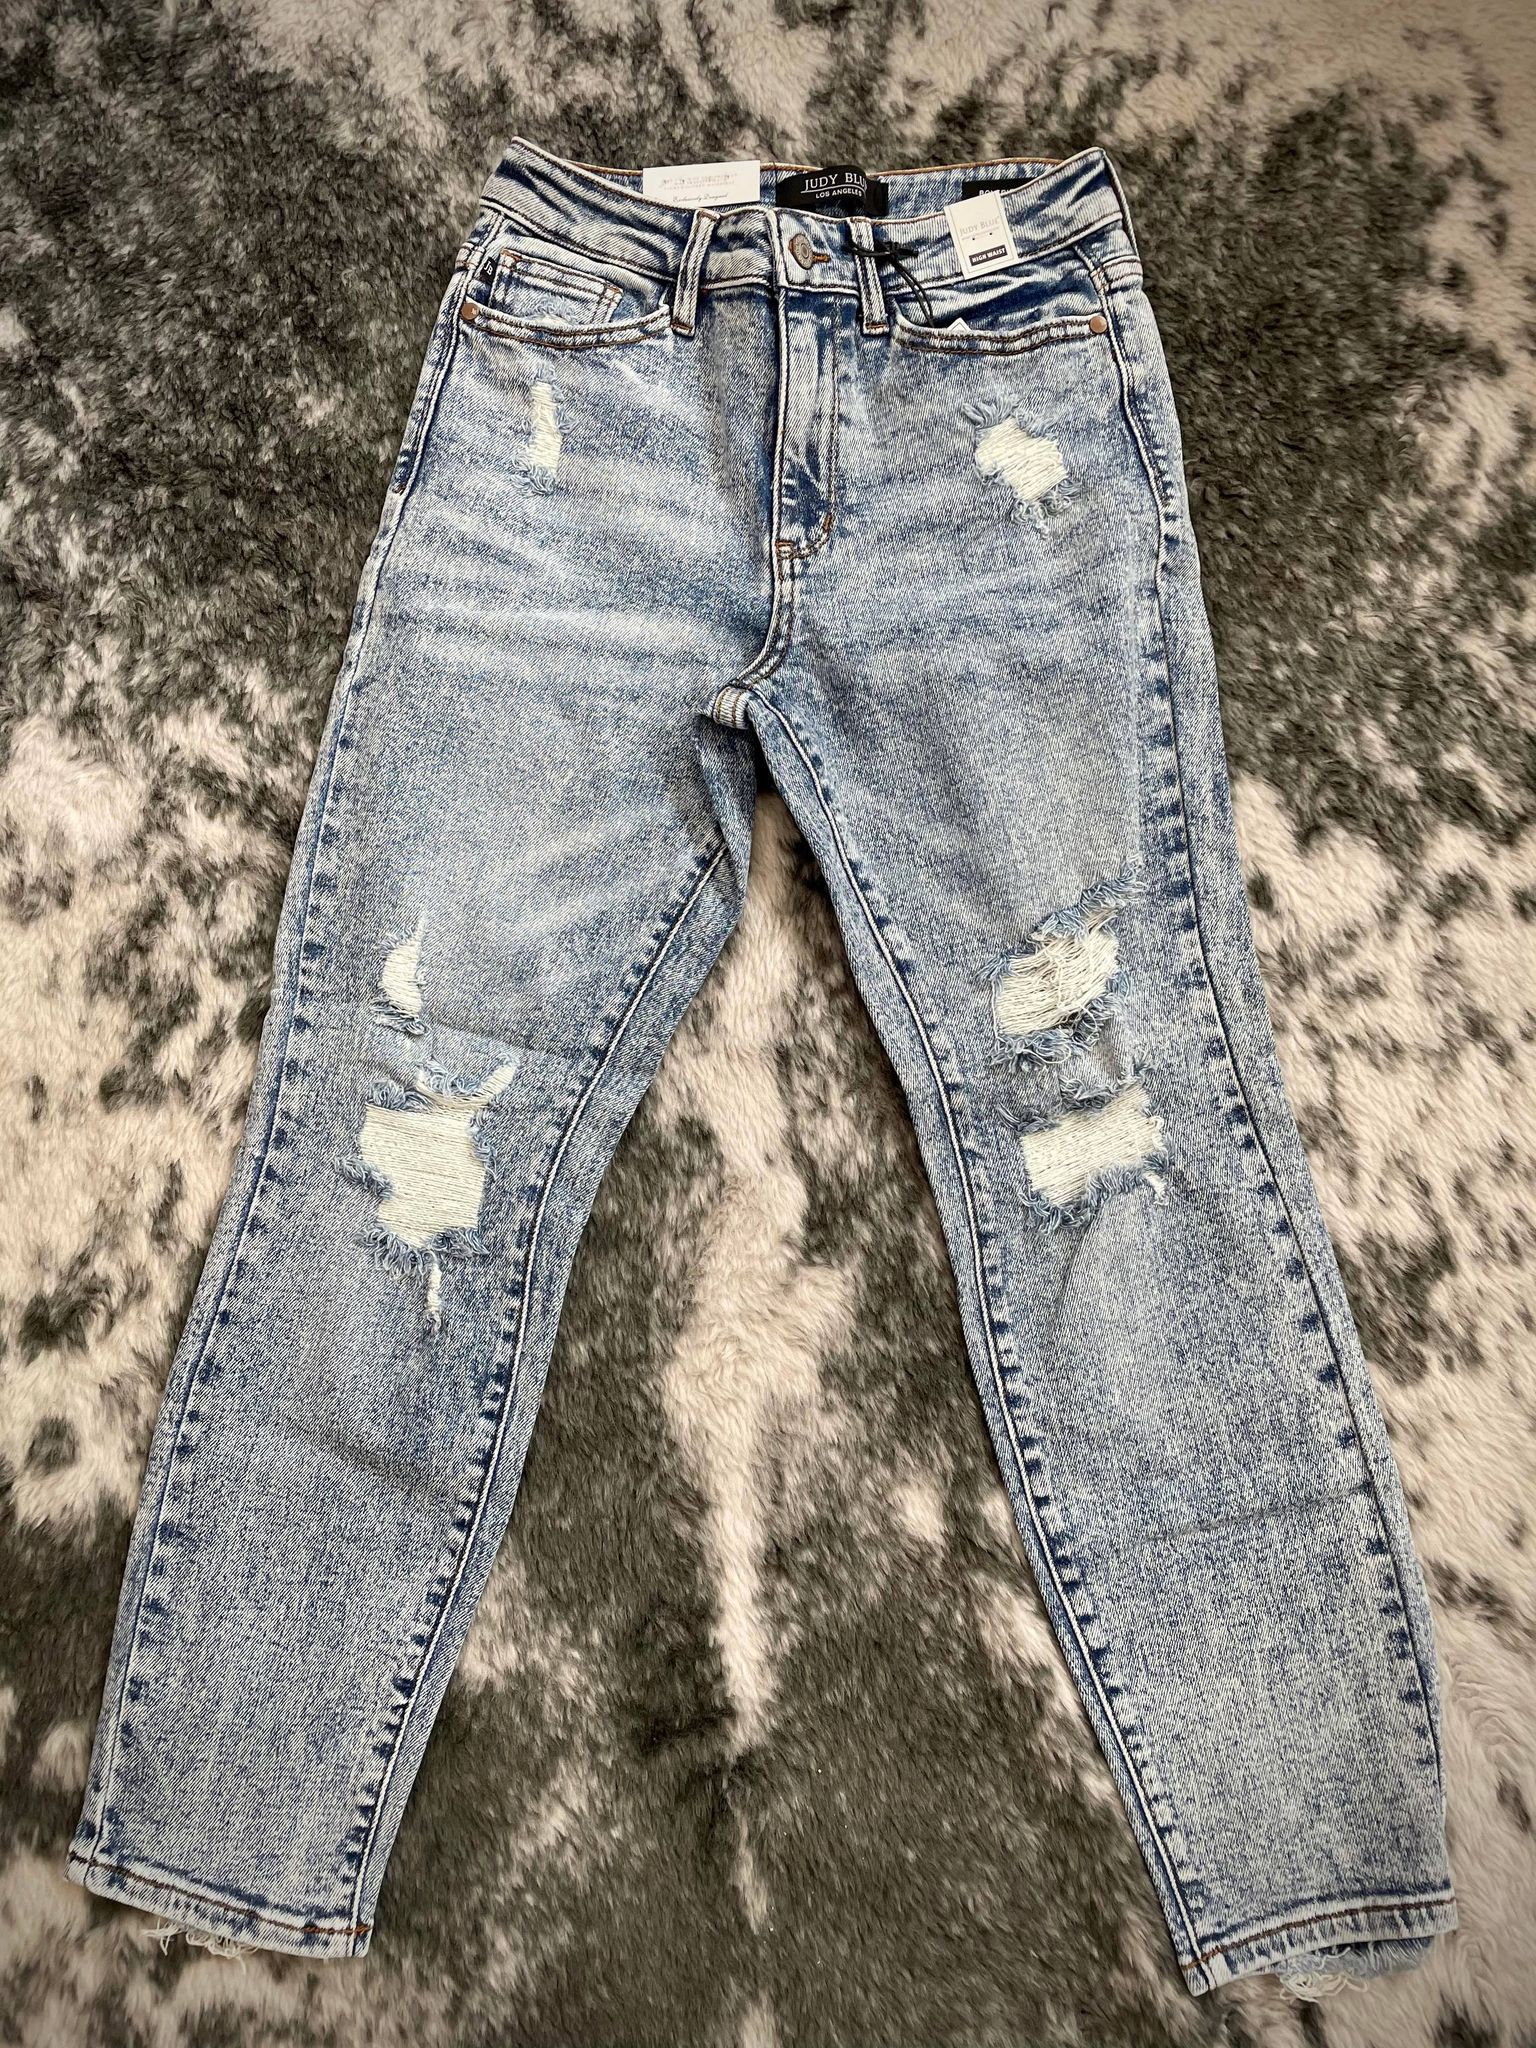 Jeans/Pants